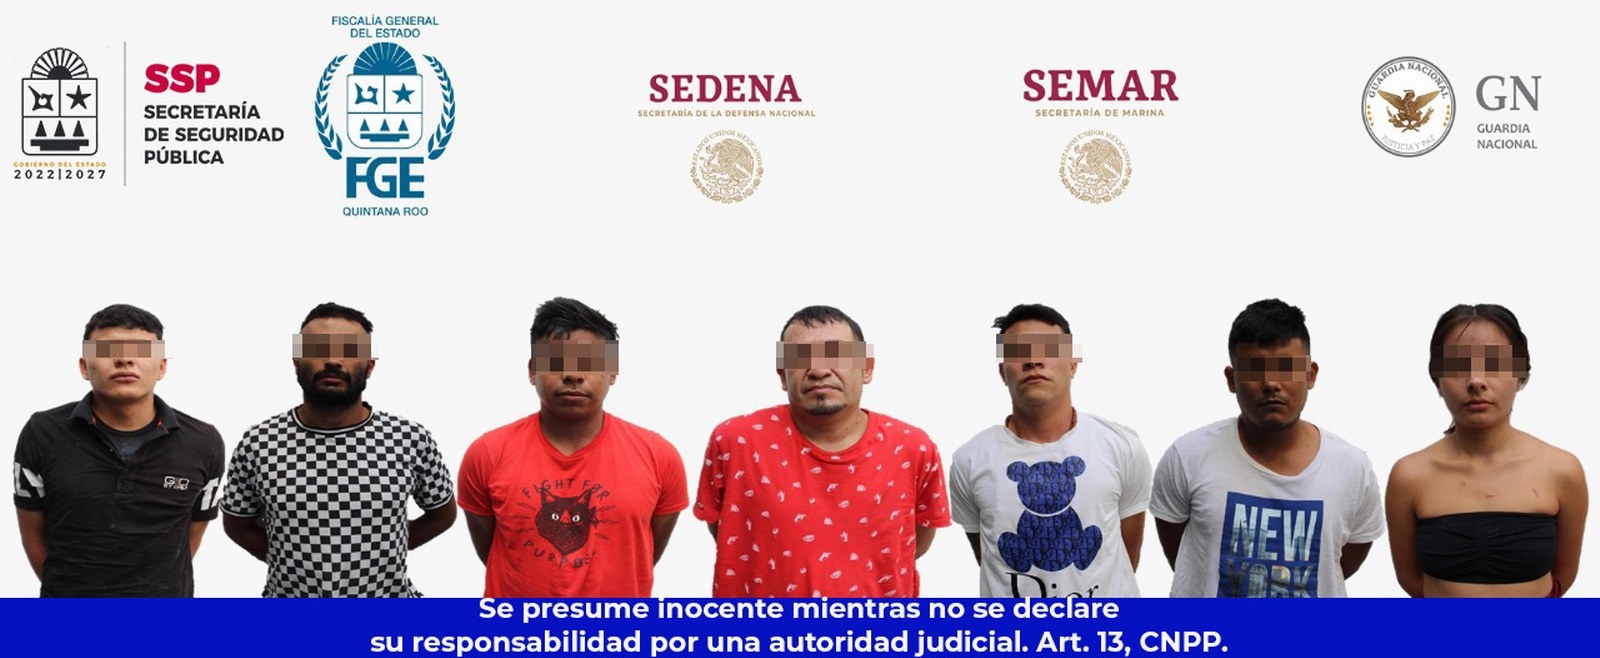 Operativos de cateo en Cancún: SSP revela la identidad de siete de los 13 detenidos del sábado